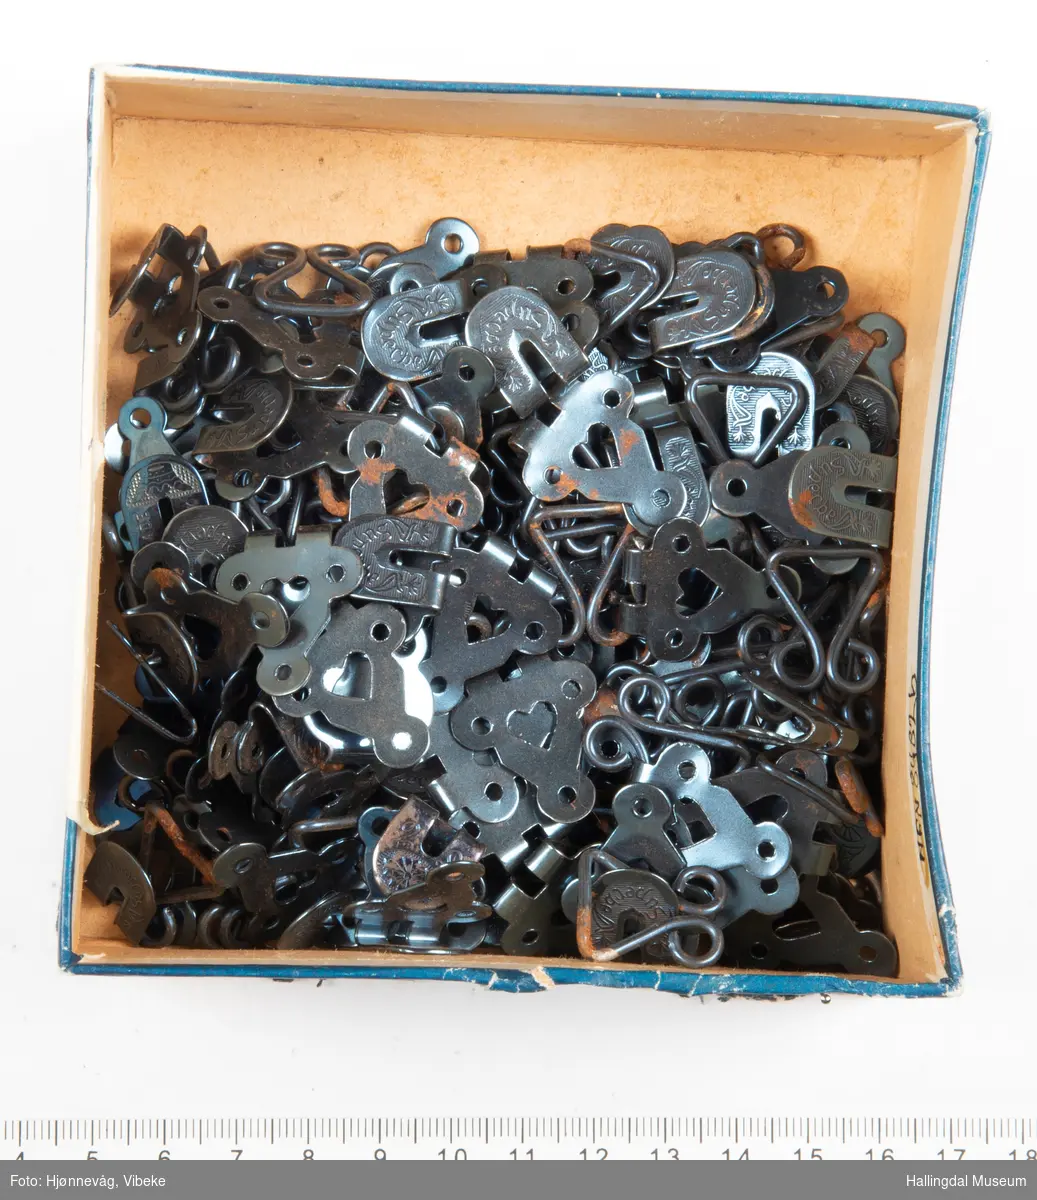 Svarte metallhekter som ligger i en pappeske med blått lokk.